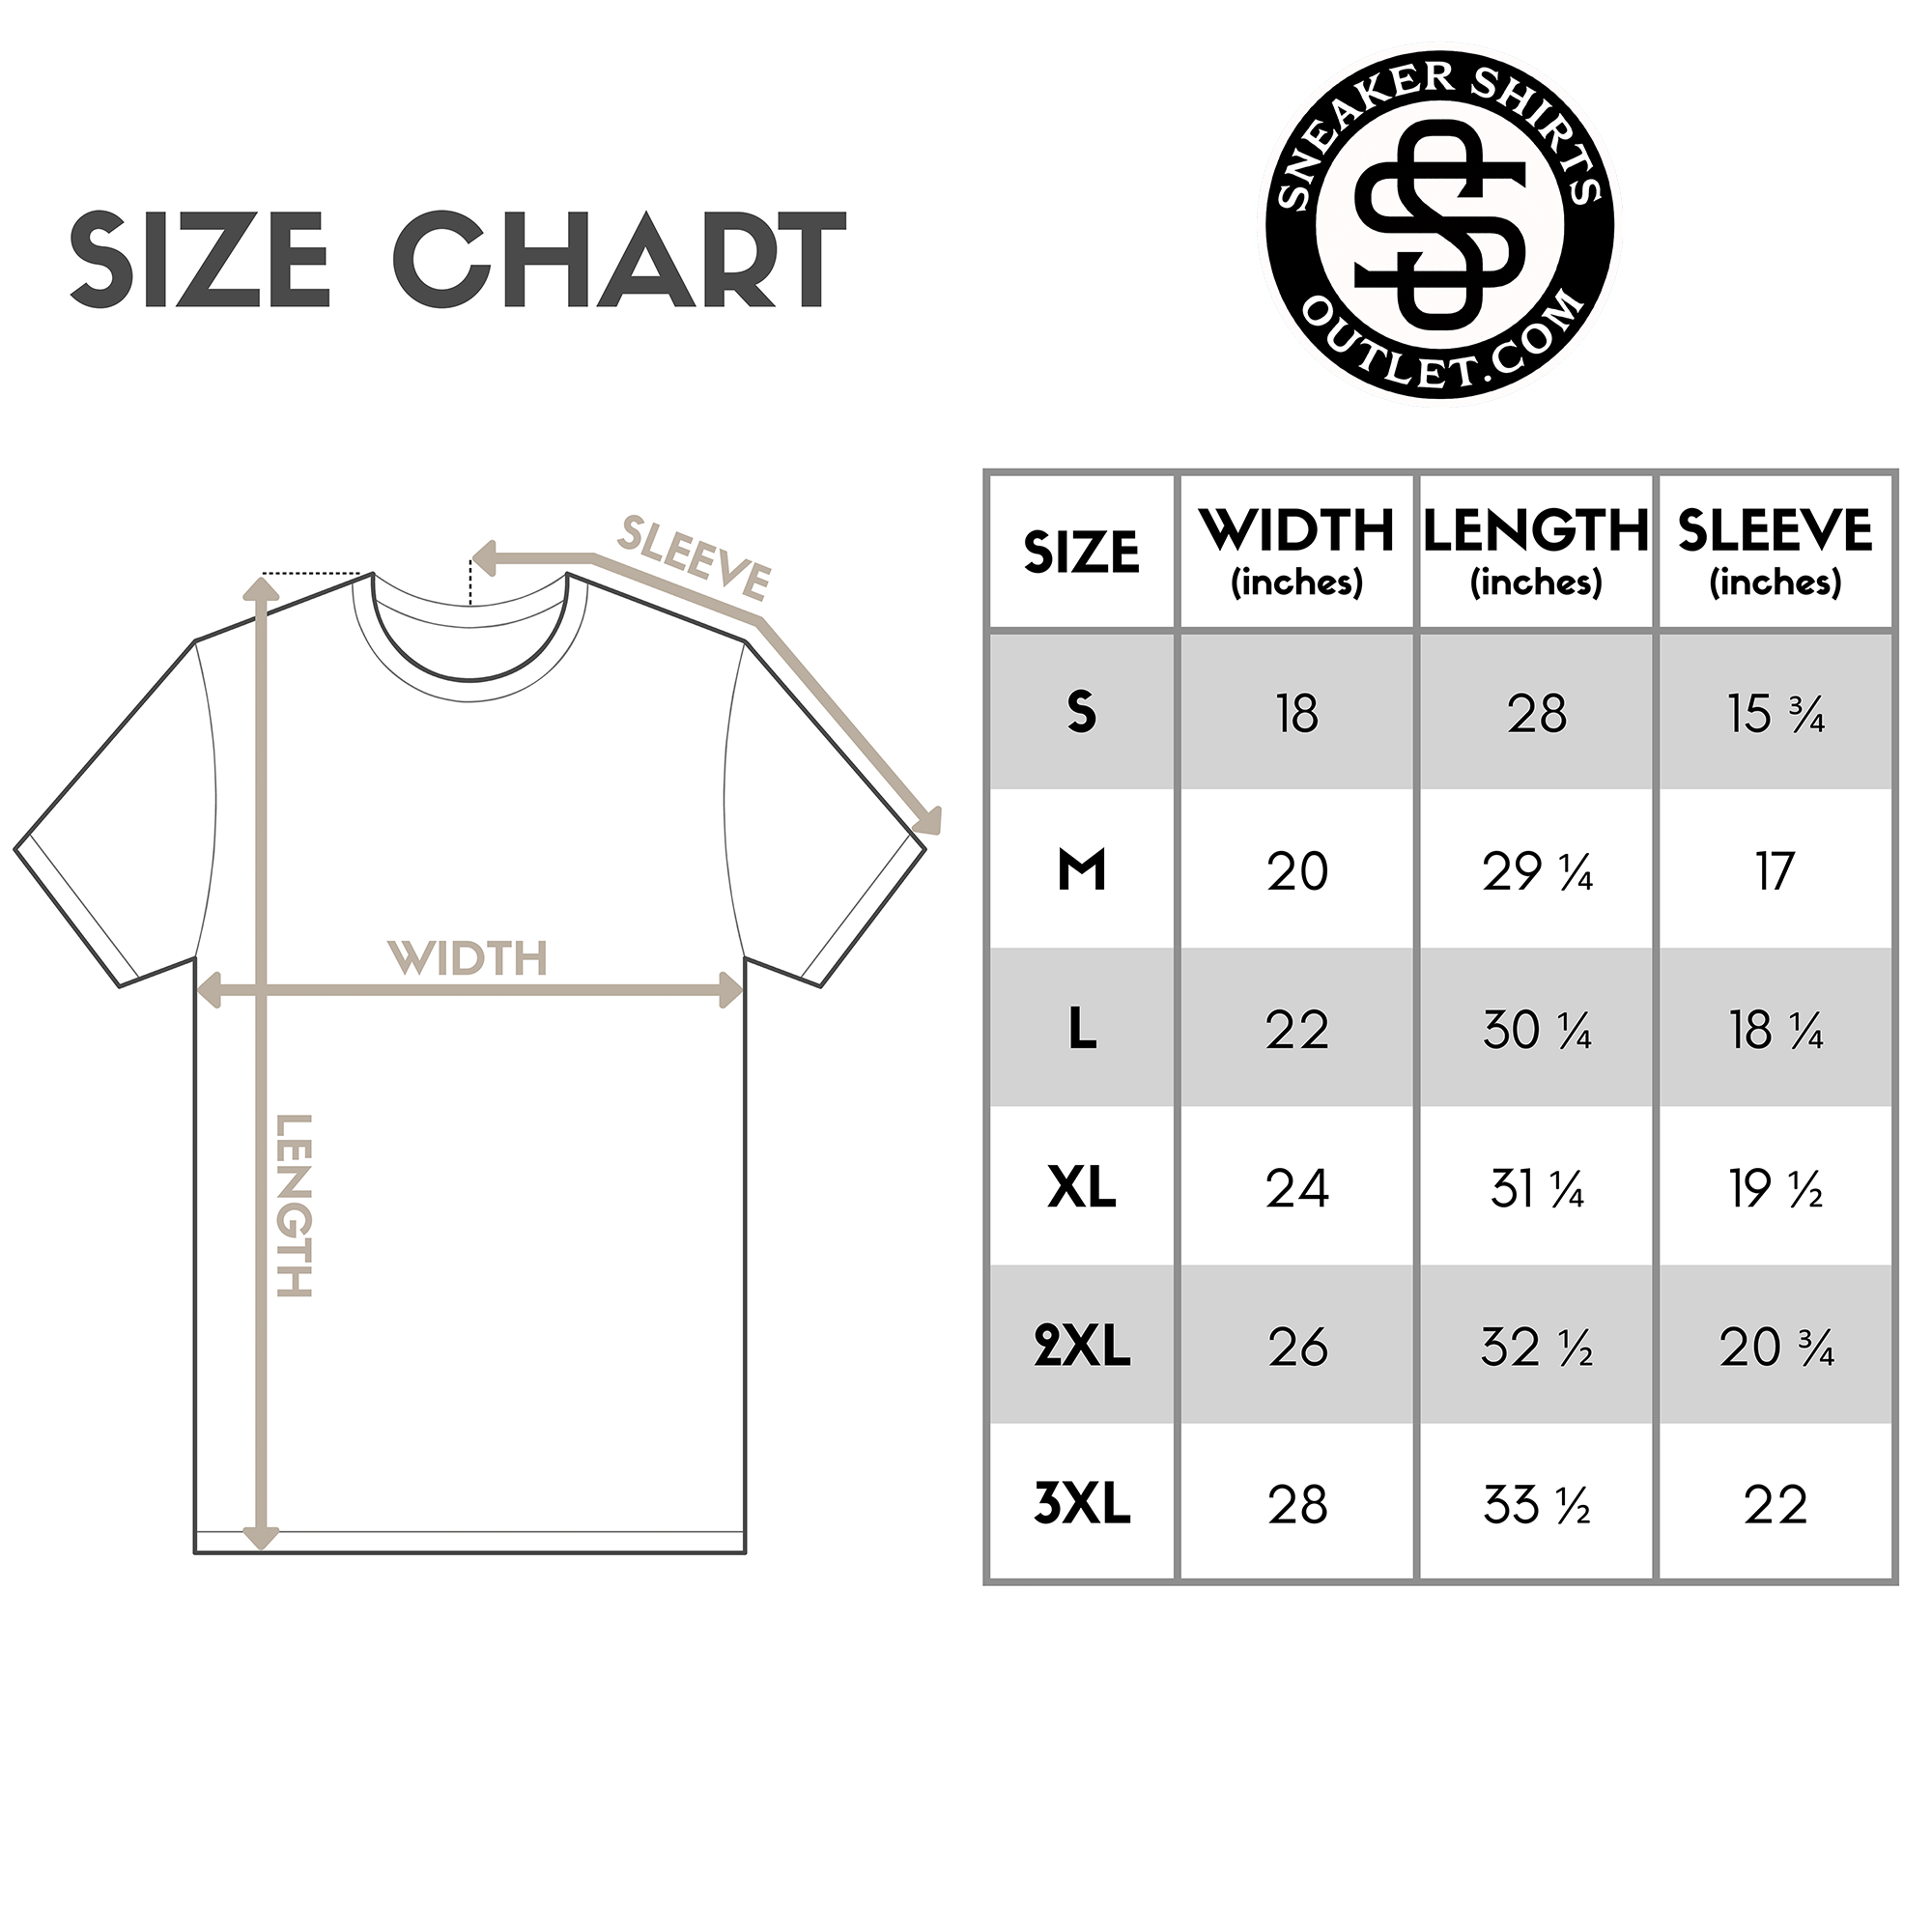 Royal Reimagined 1s DopeStar Shirt Money Maker Graphic